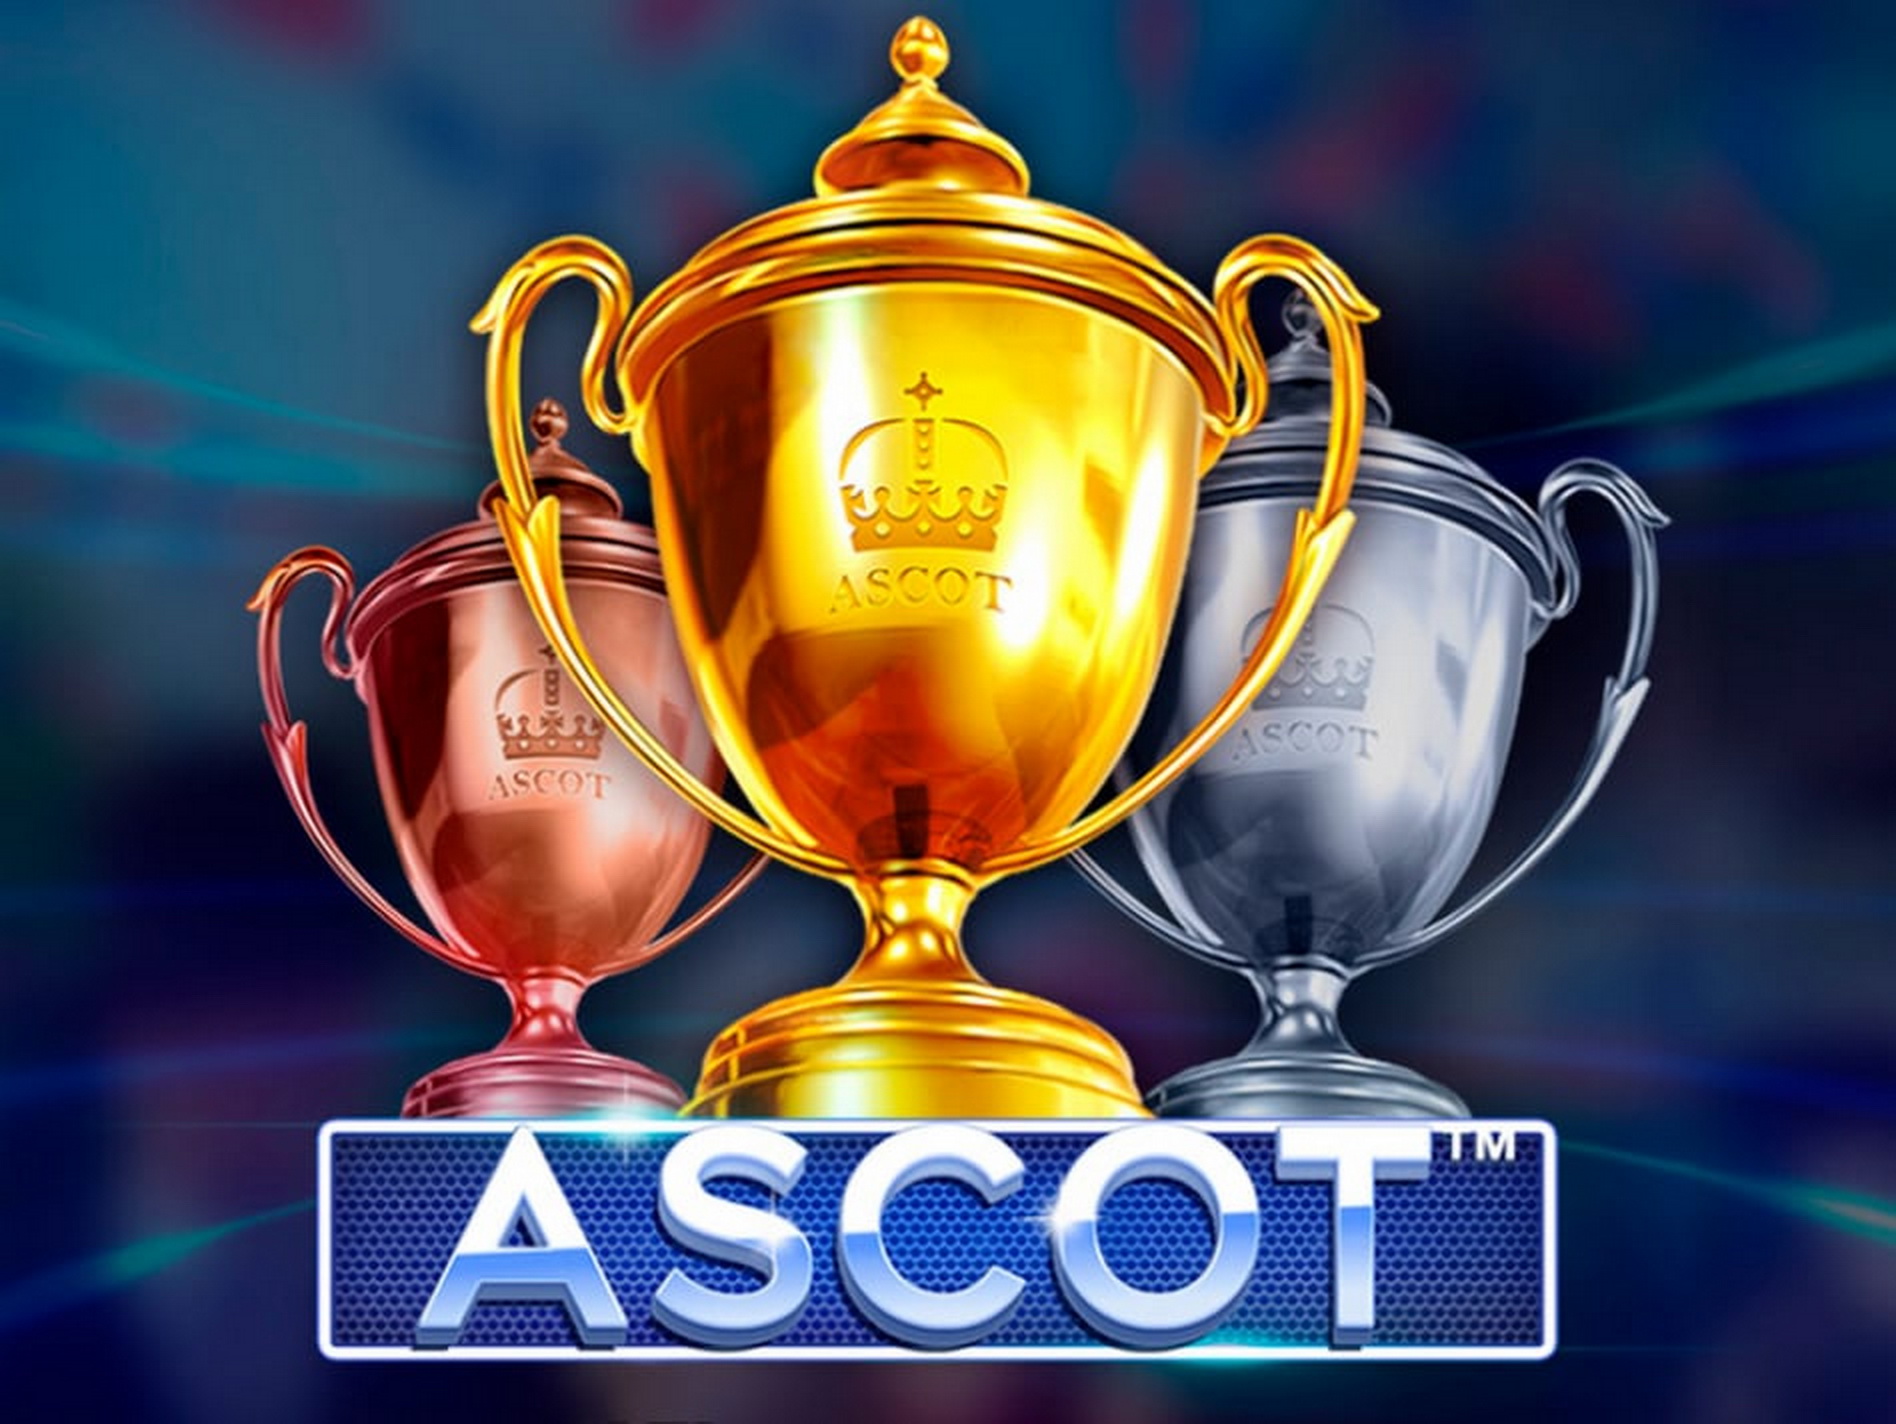 Ascot - Sporting Legends